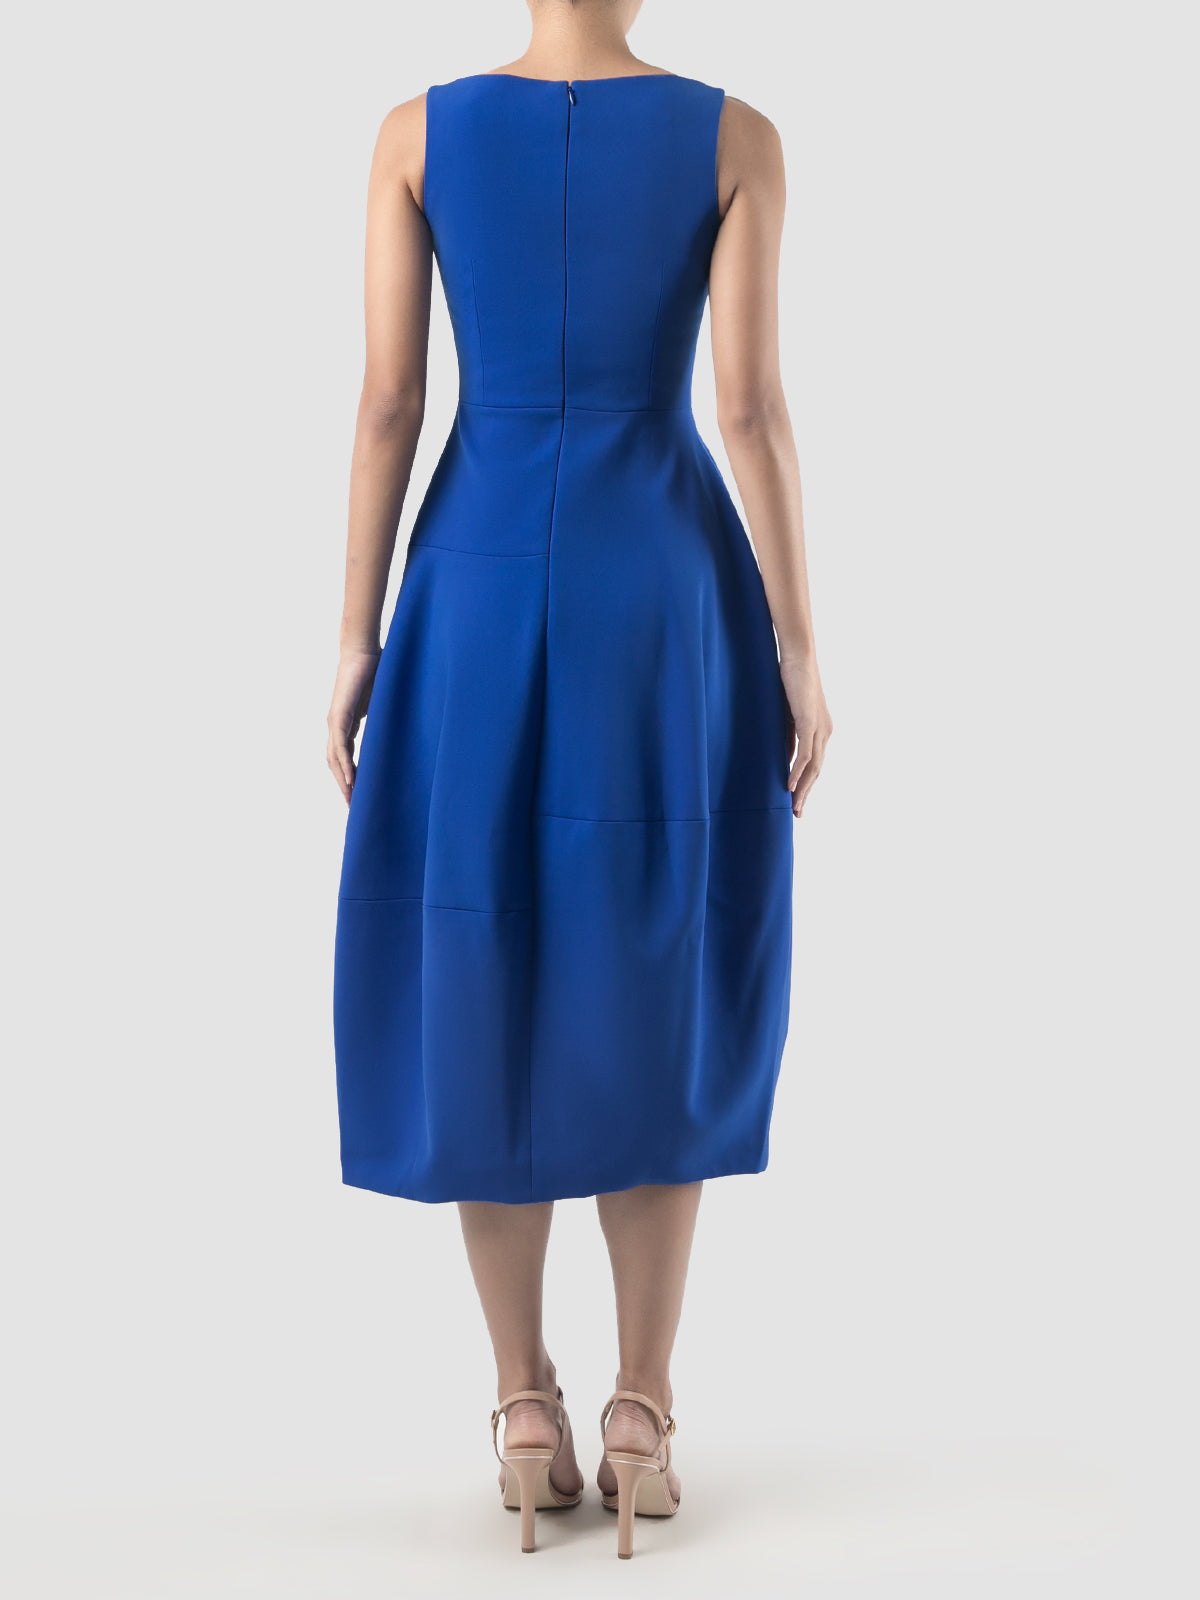 Cobalt blue v-neck paneled midi dress